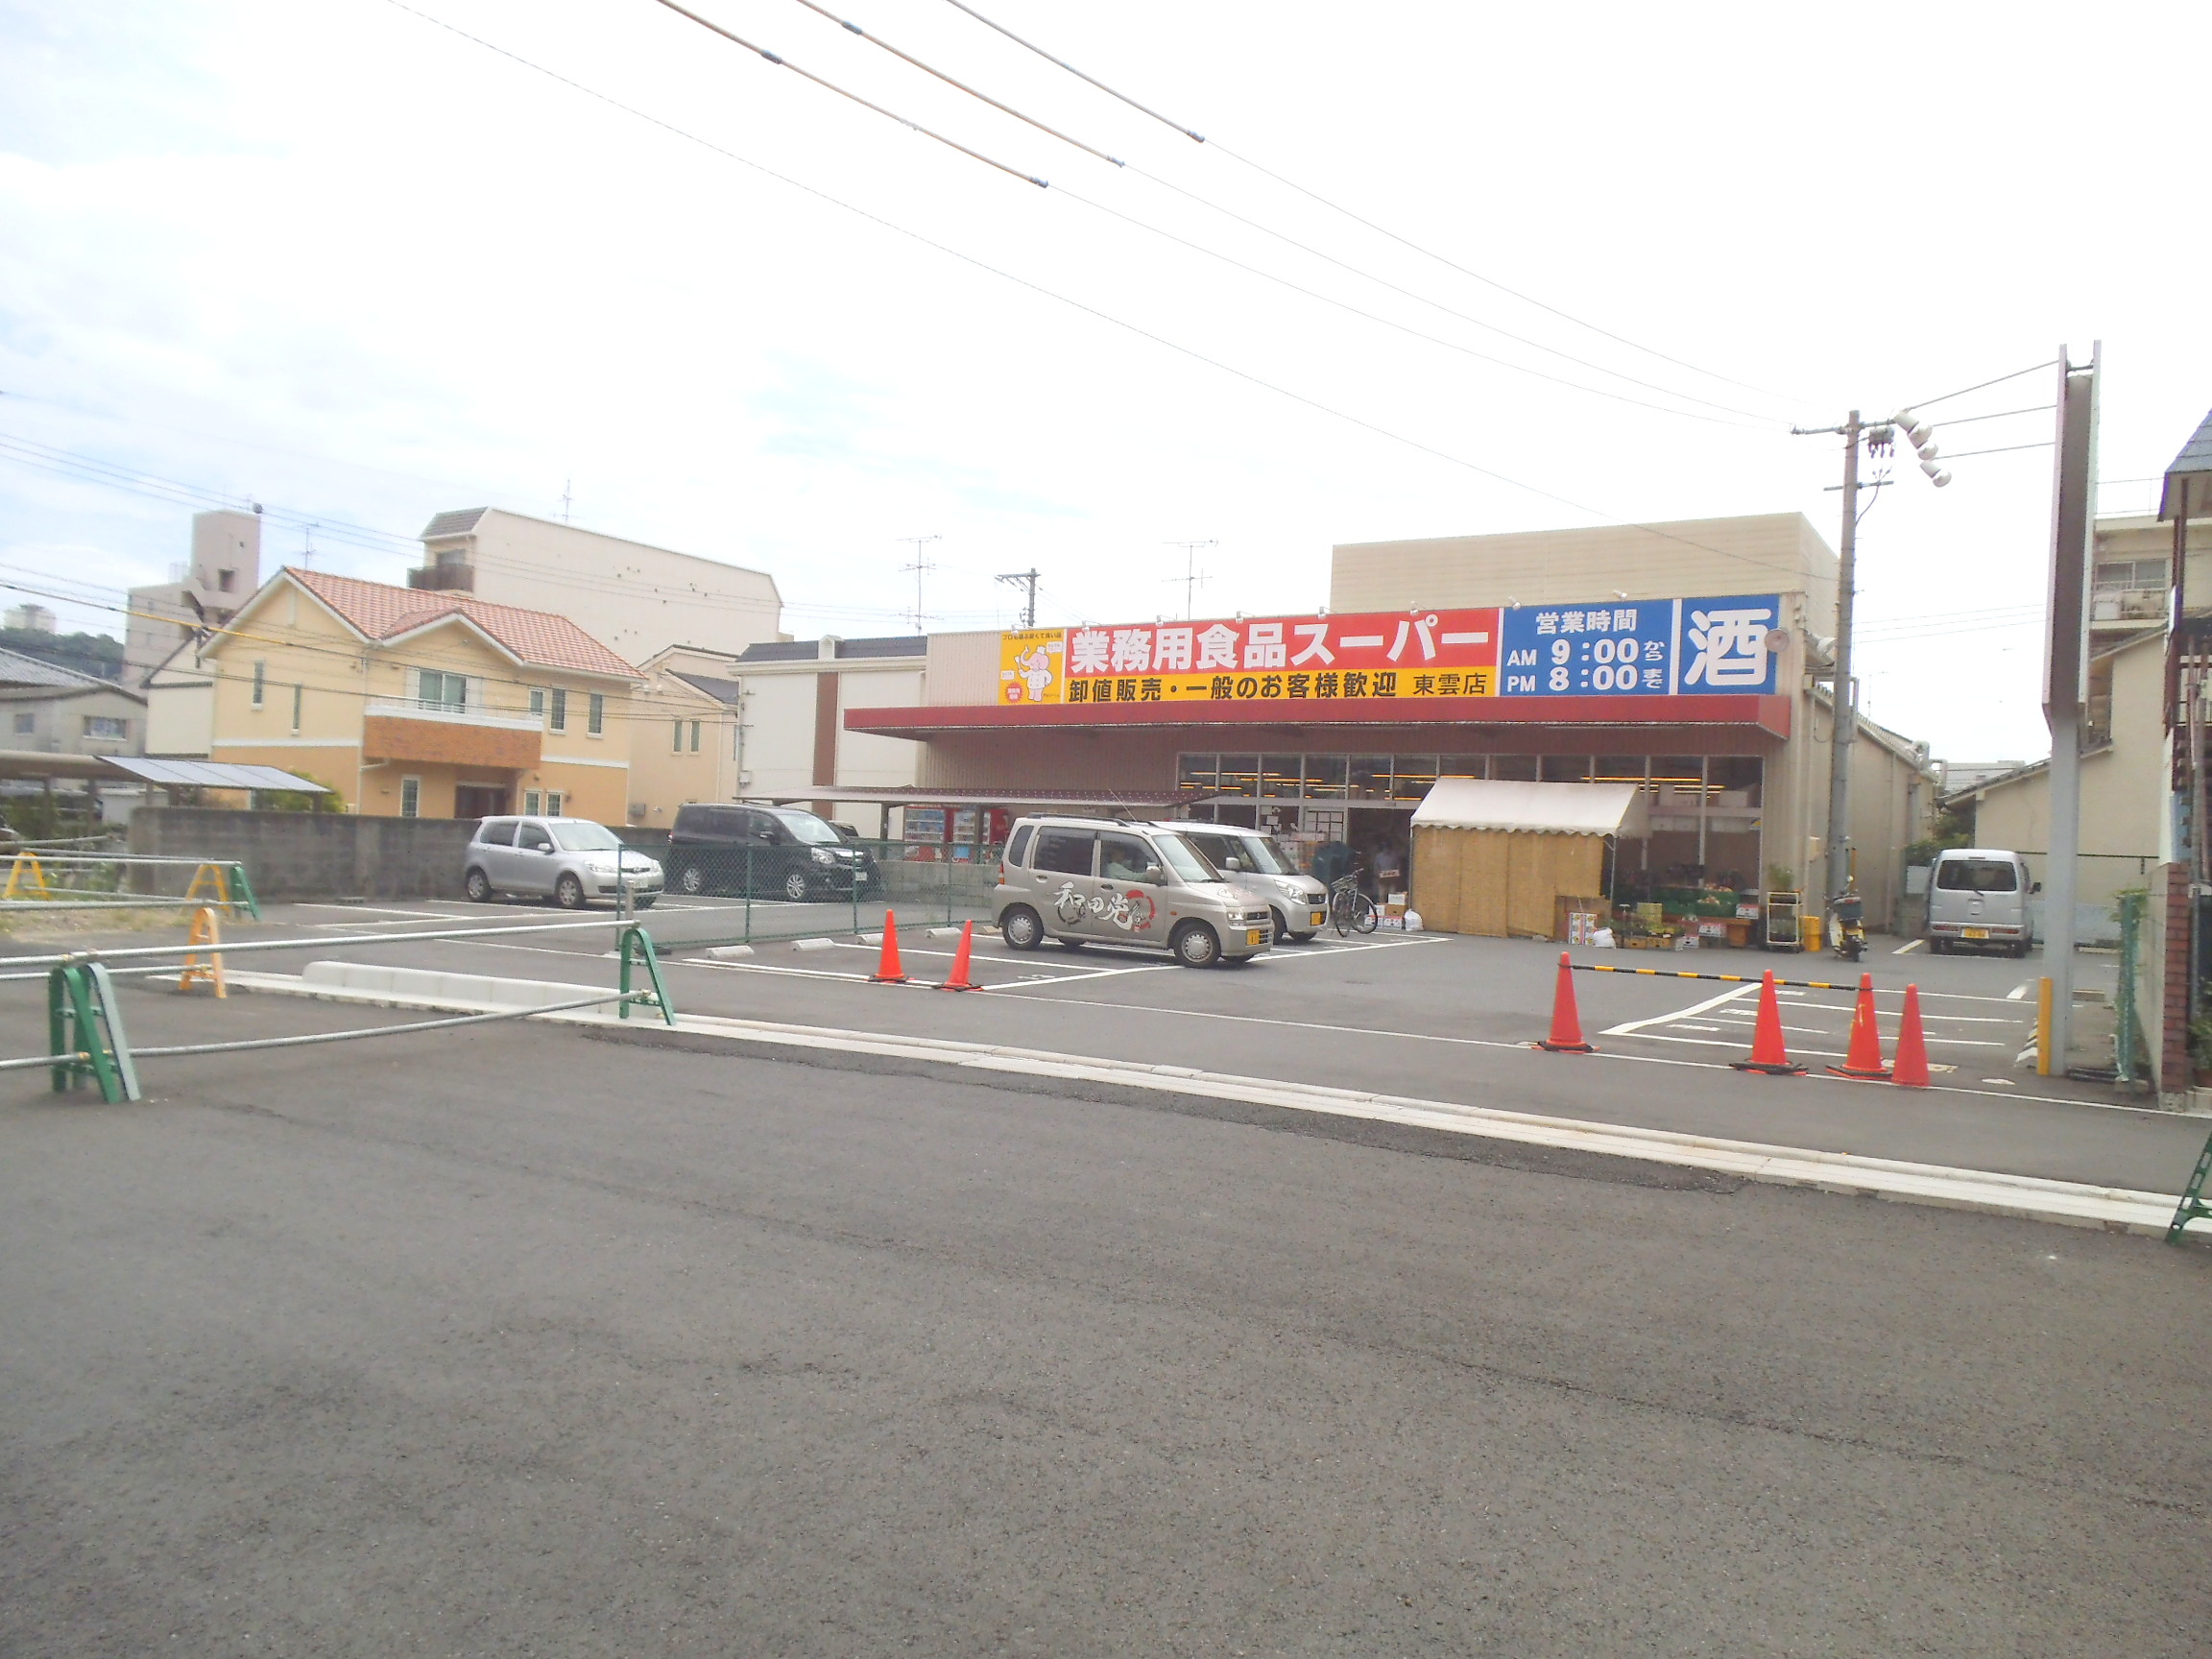 Supermarket. 494m to commercial food super Shinonome store (Super)